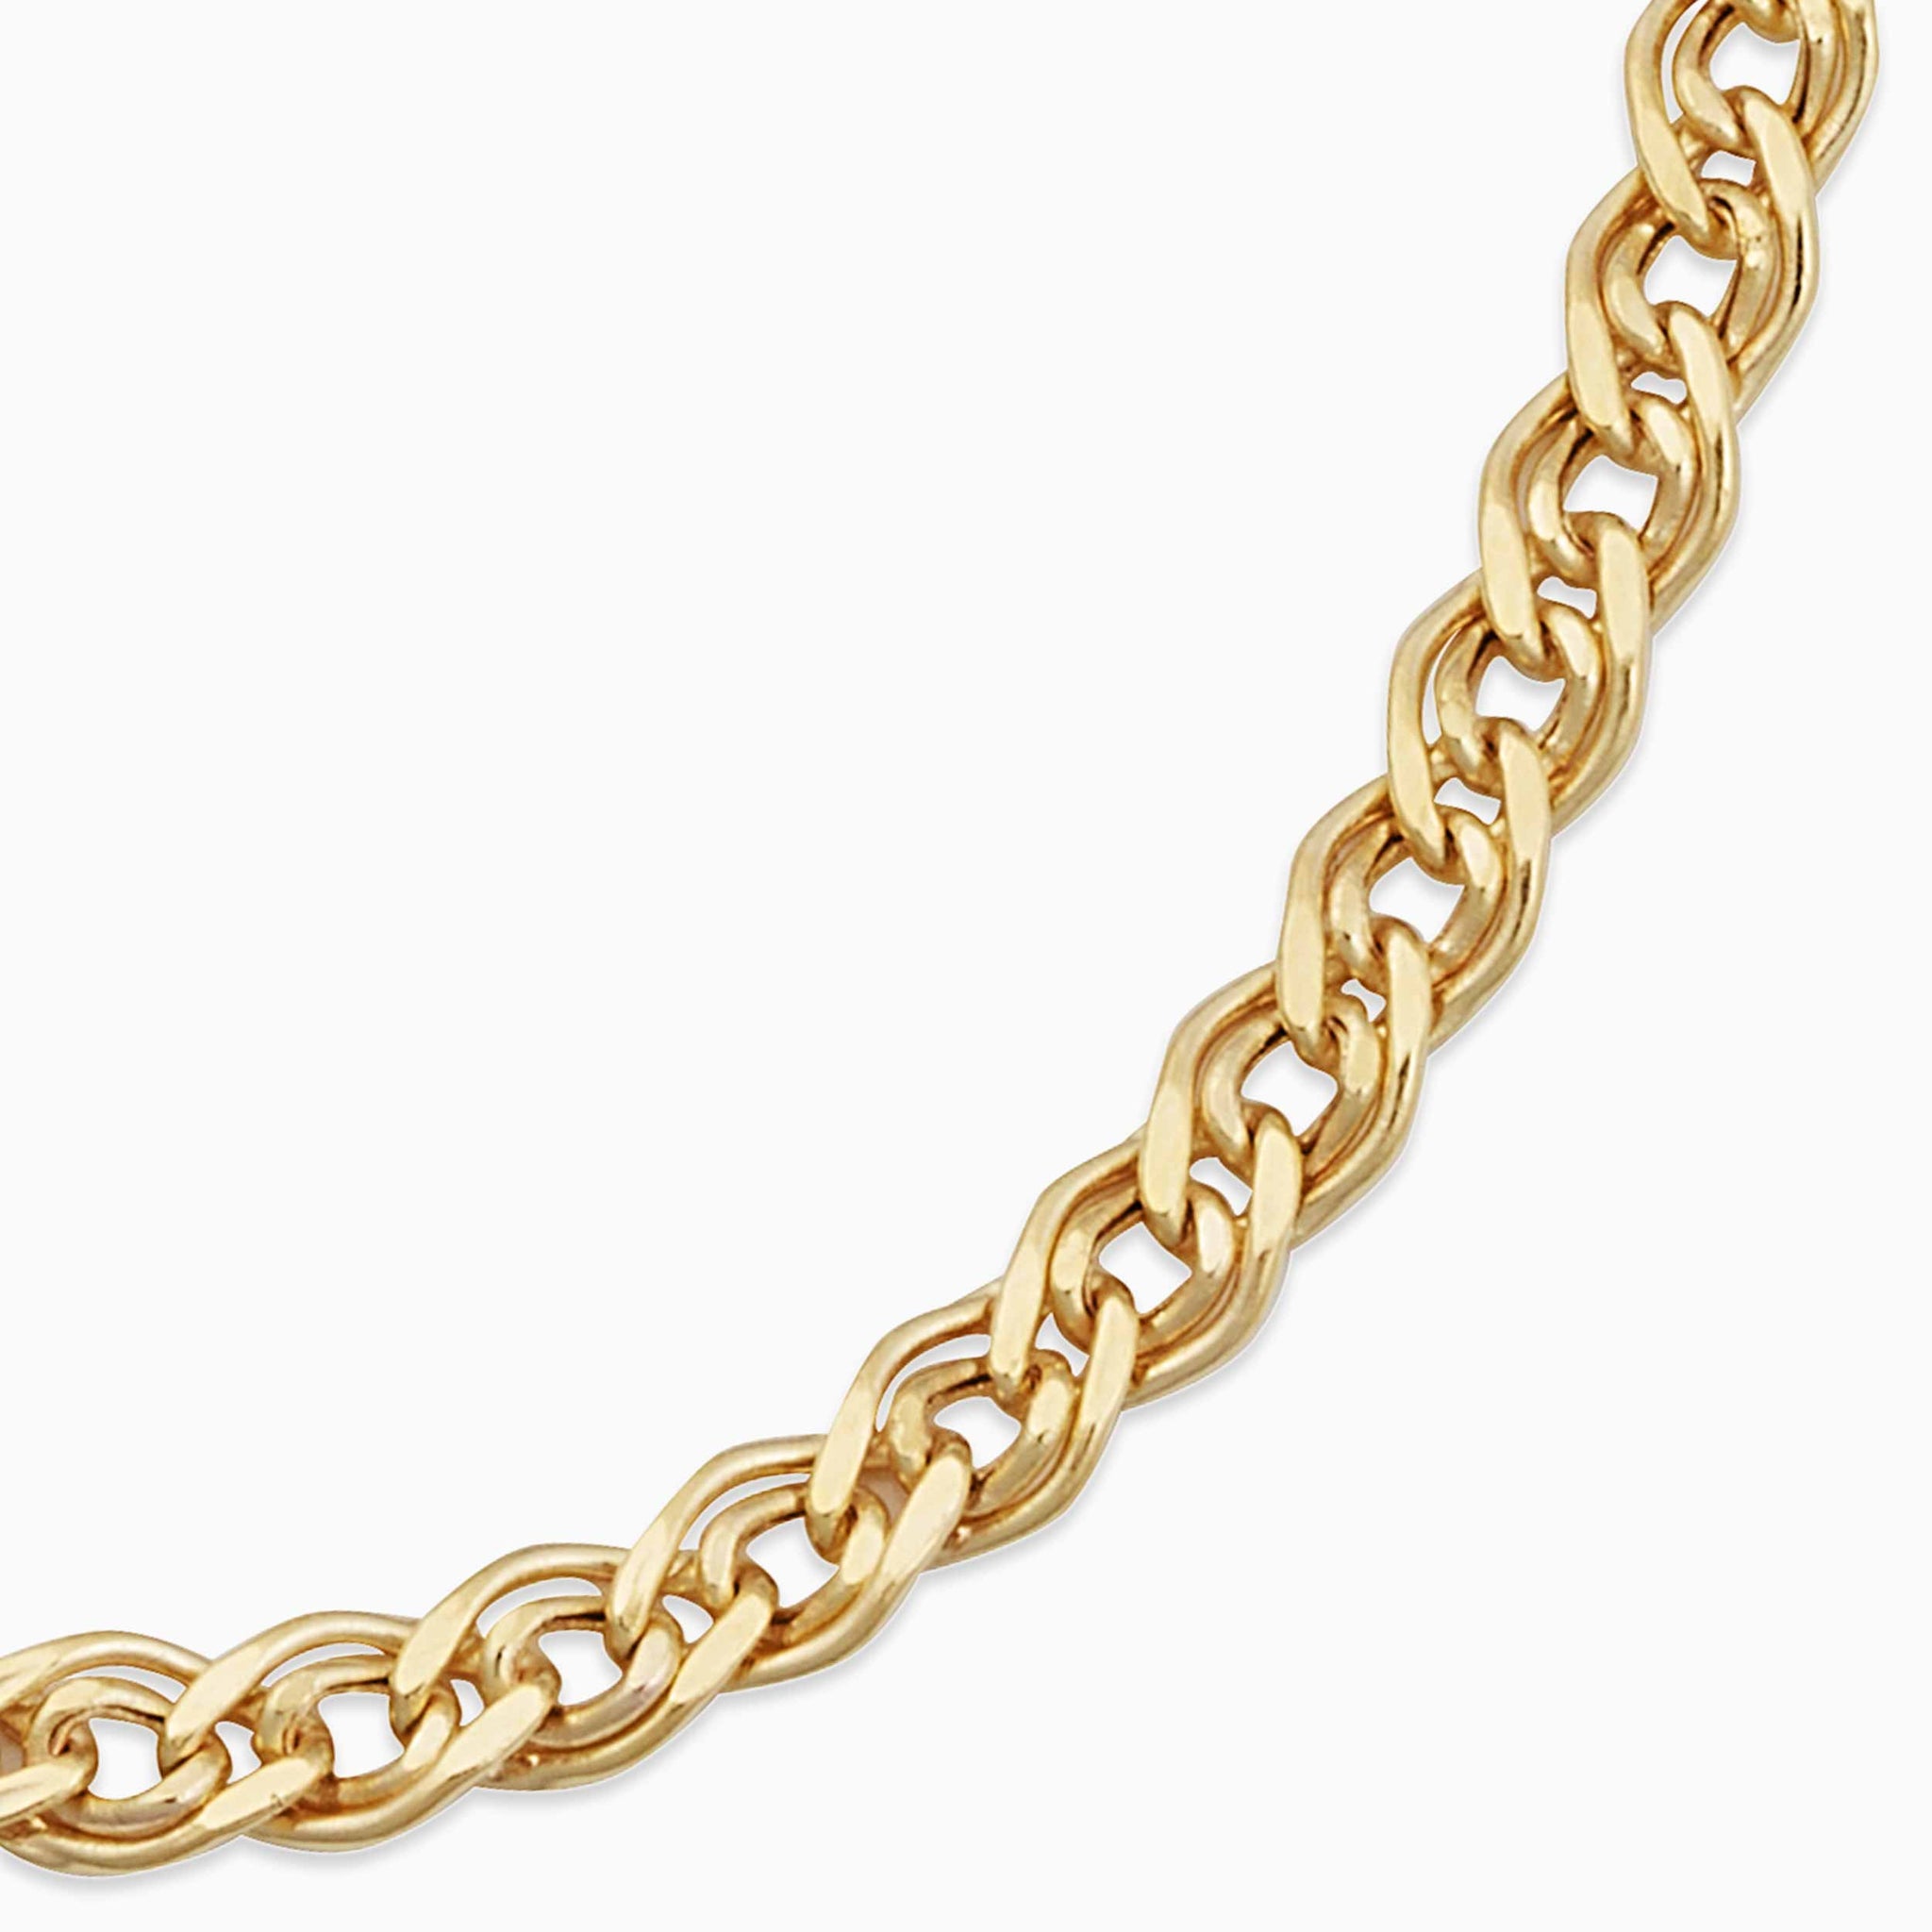 Shop Trendy Necklaces for Women - Best Selection – Dazzledvenus